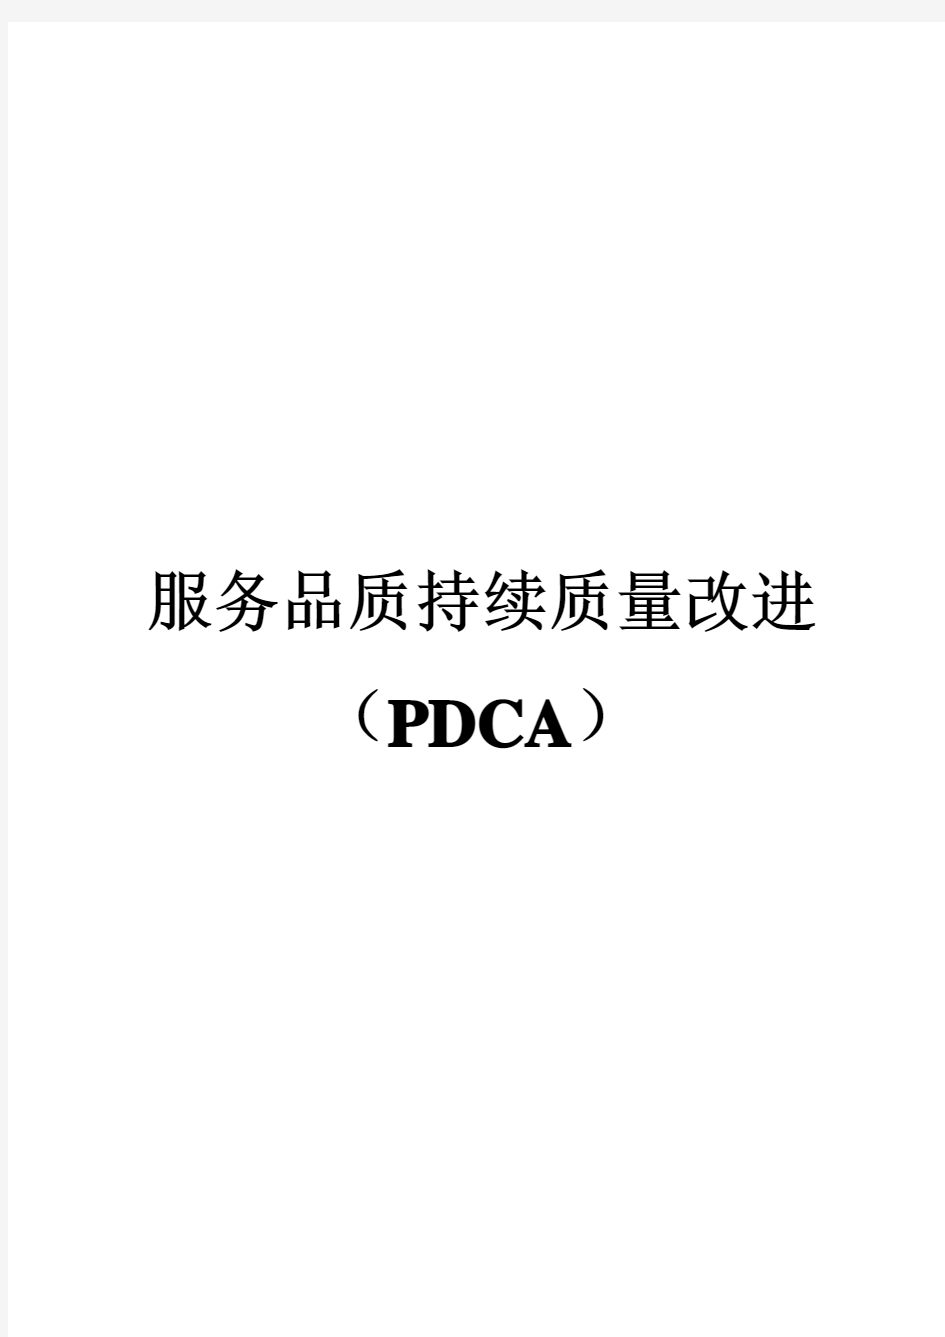 服务高质量持续改进(PDCA)2019年